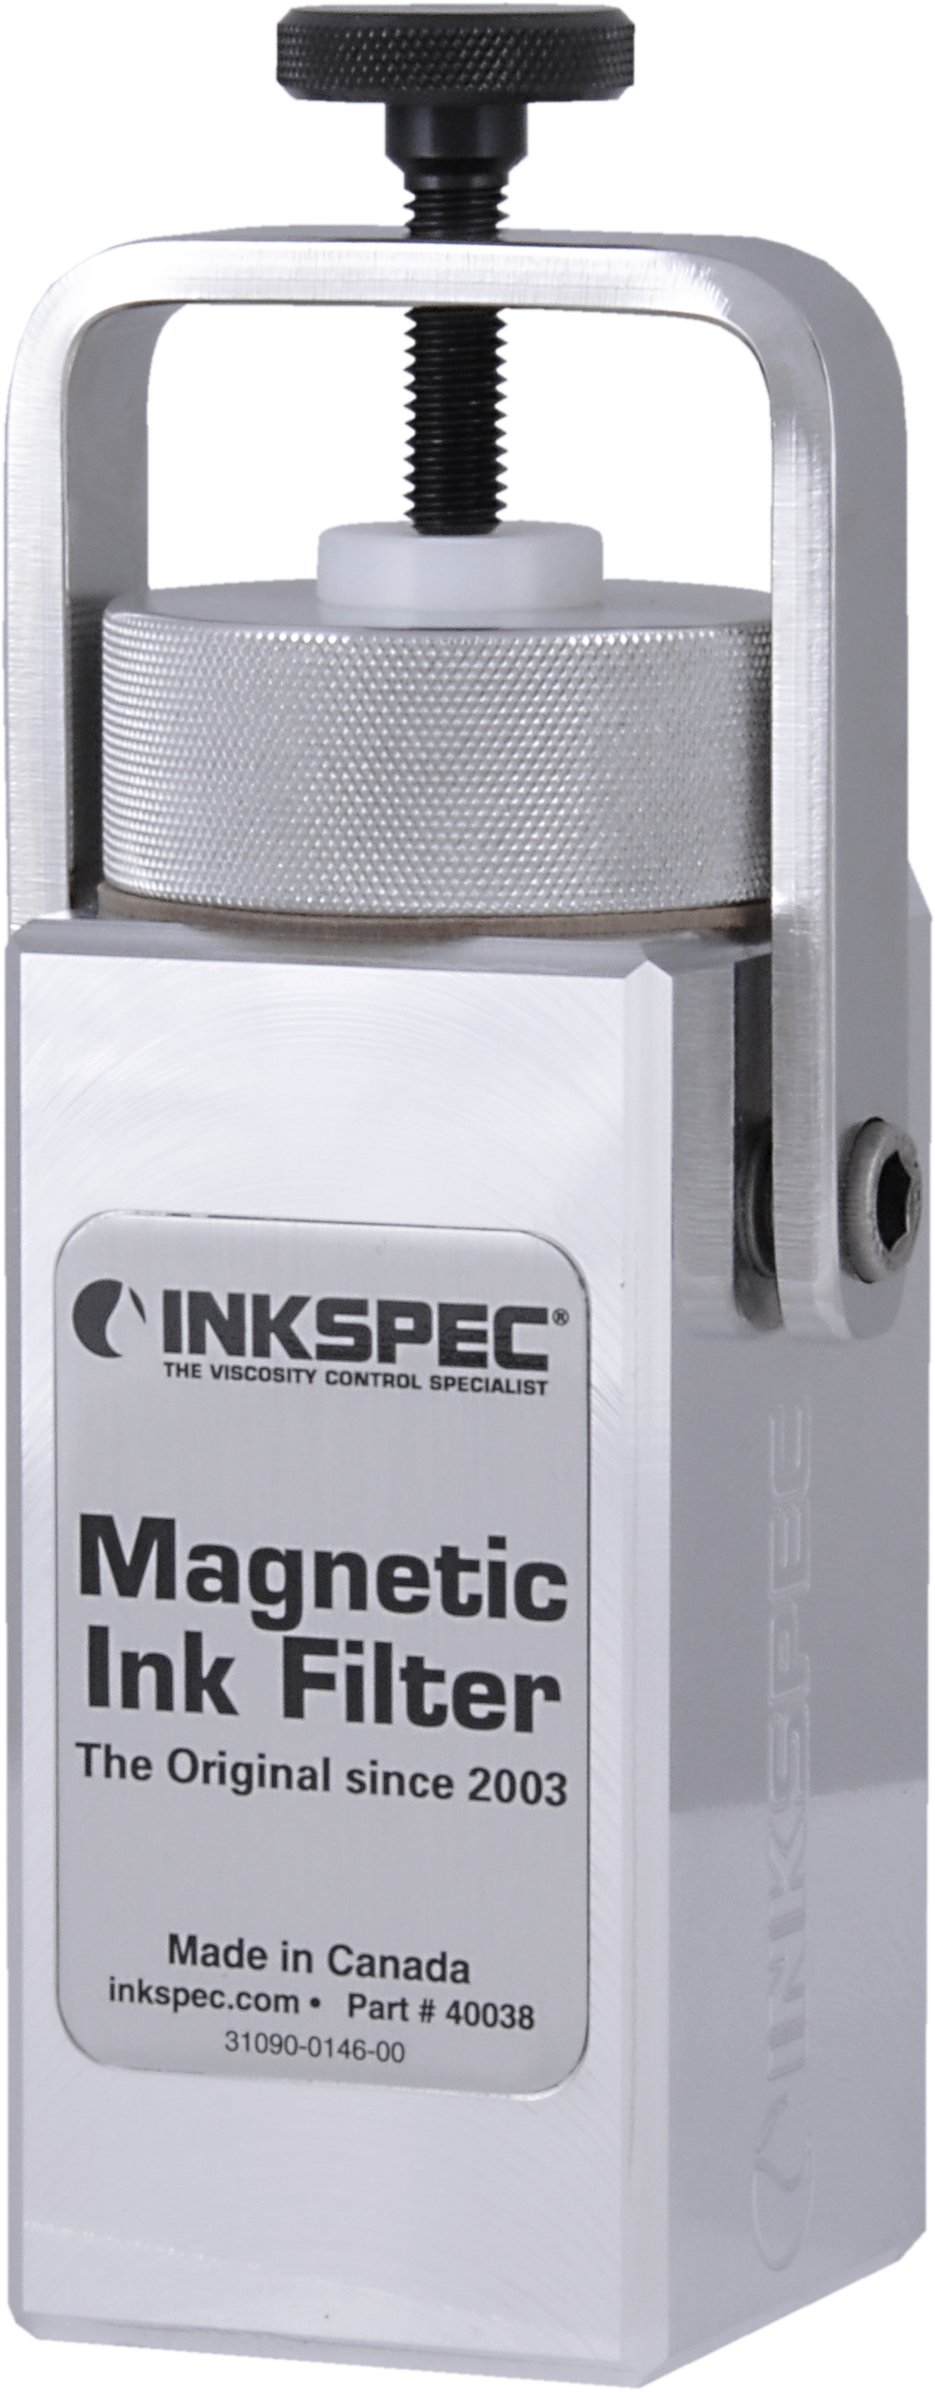 InkSpec Magnetic Ink Filter